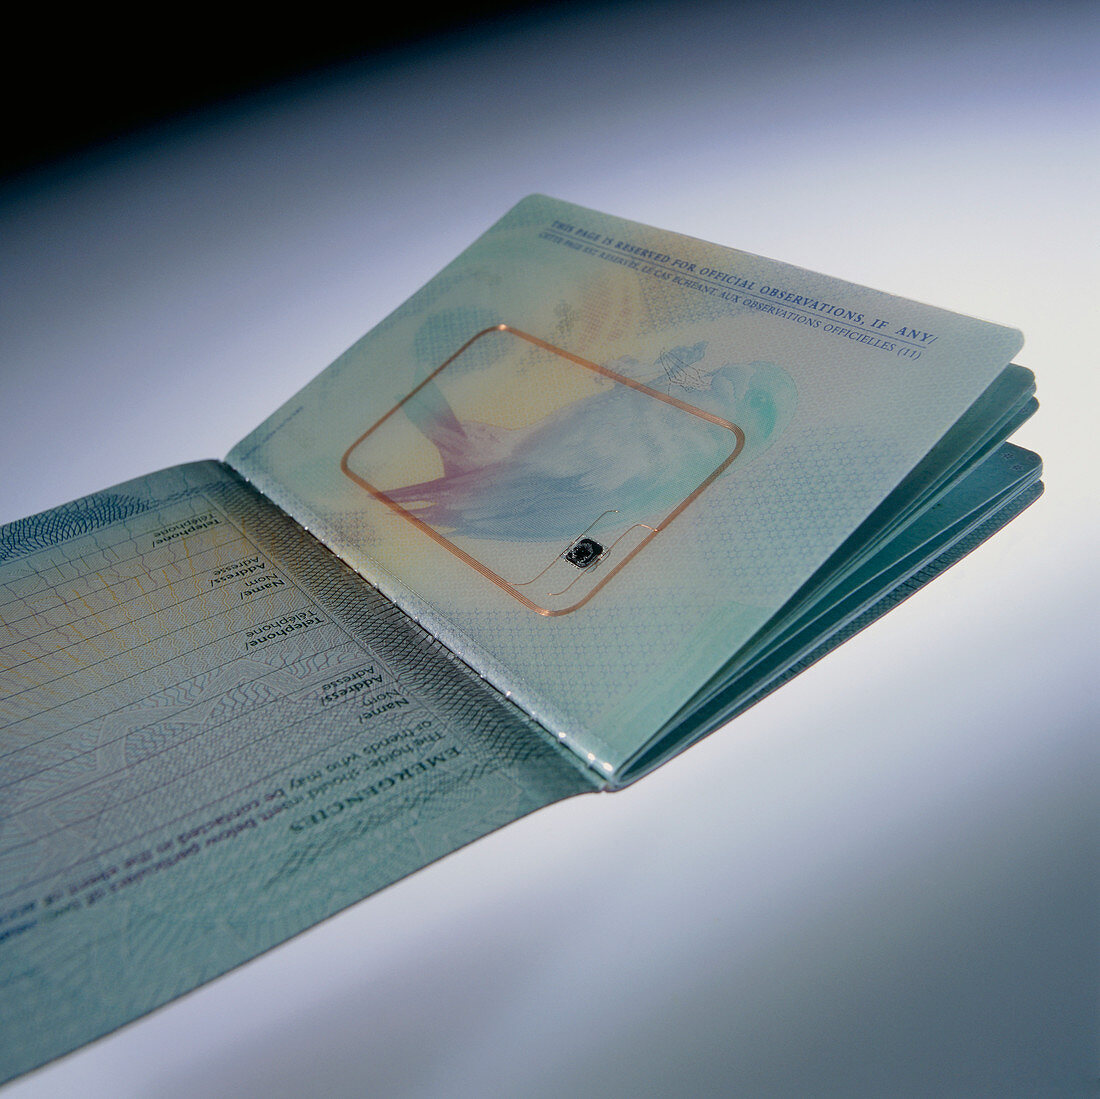 Biometric passport chip